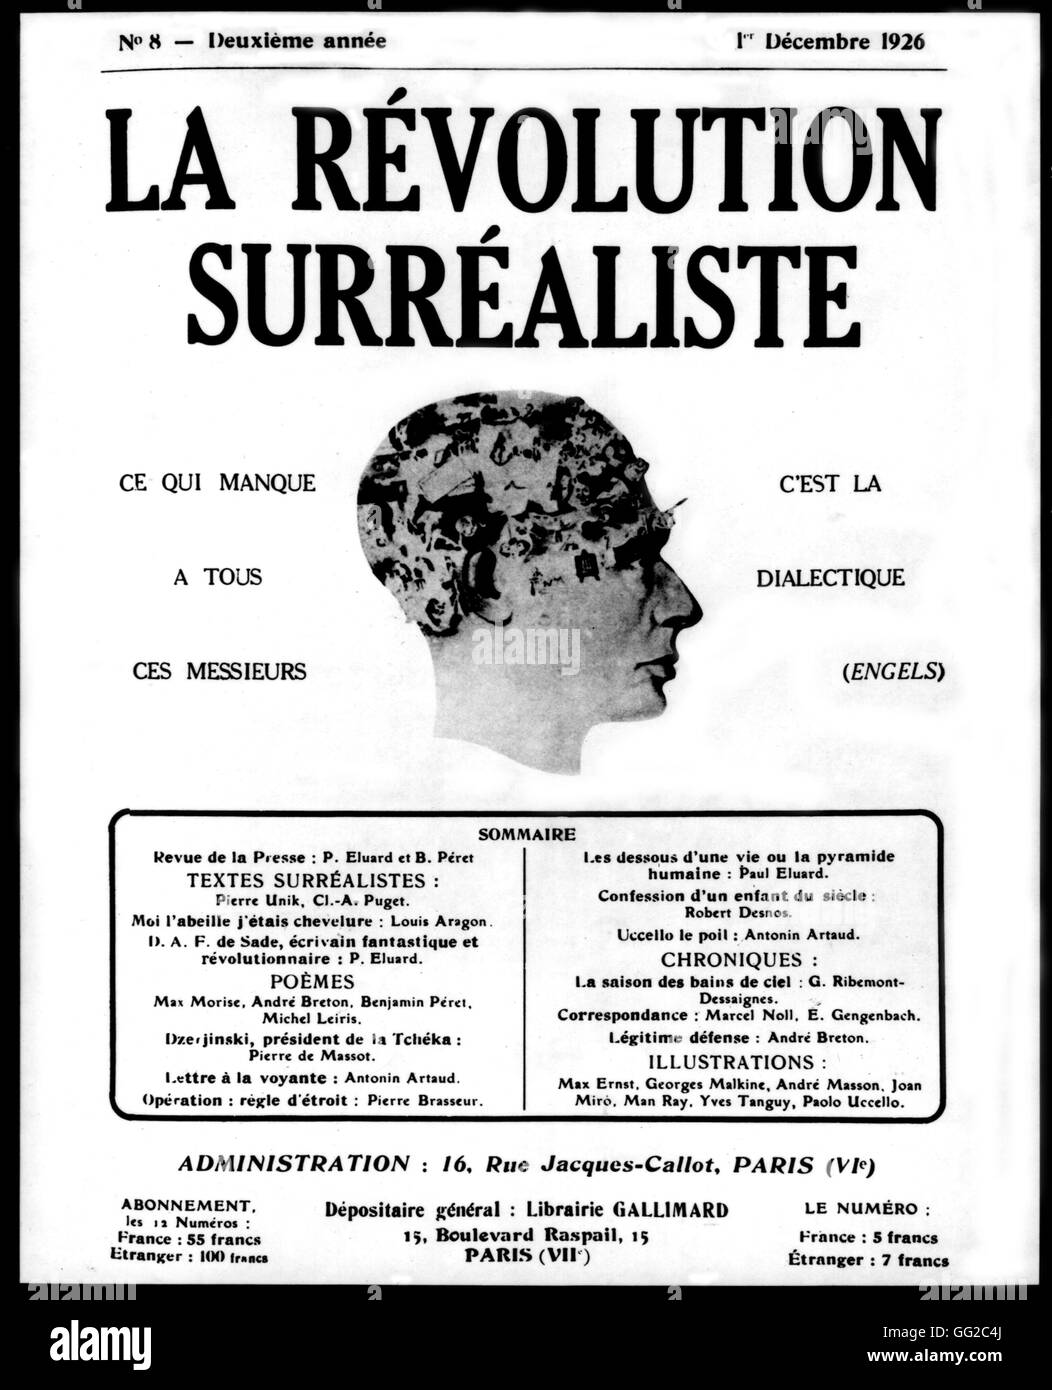 Issue #8 of the magazine 'La révolution surréaliste' December 1st, 1926 France Paris, Bibliothèque Jean Doucet Stock Photo